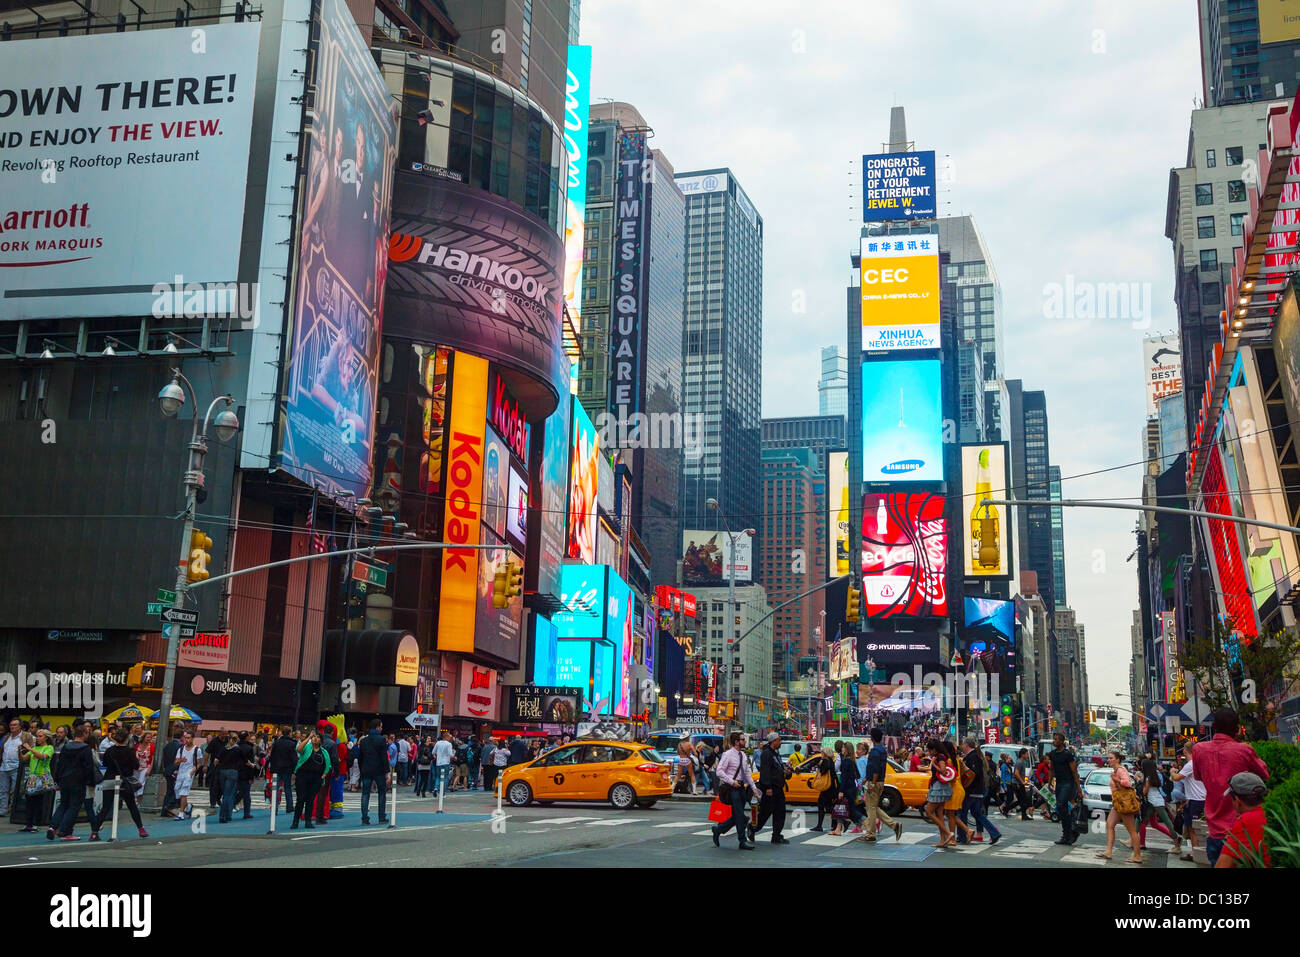 Times Square. Iconified como "La Encrucijada del Mundo" es la brillantemente iluminada cubo del distrito teatral de Broadway. Foto de stock